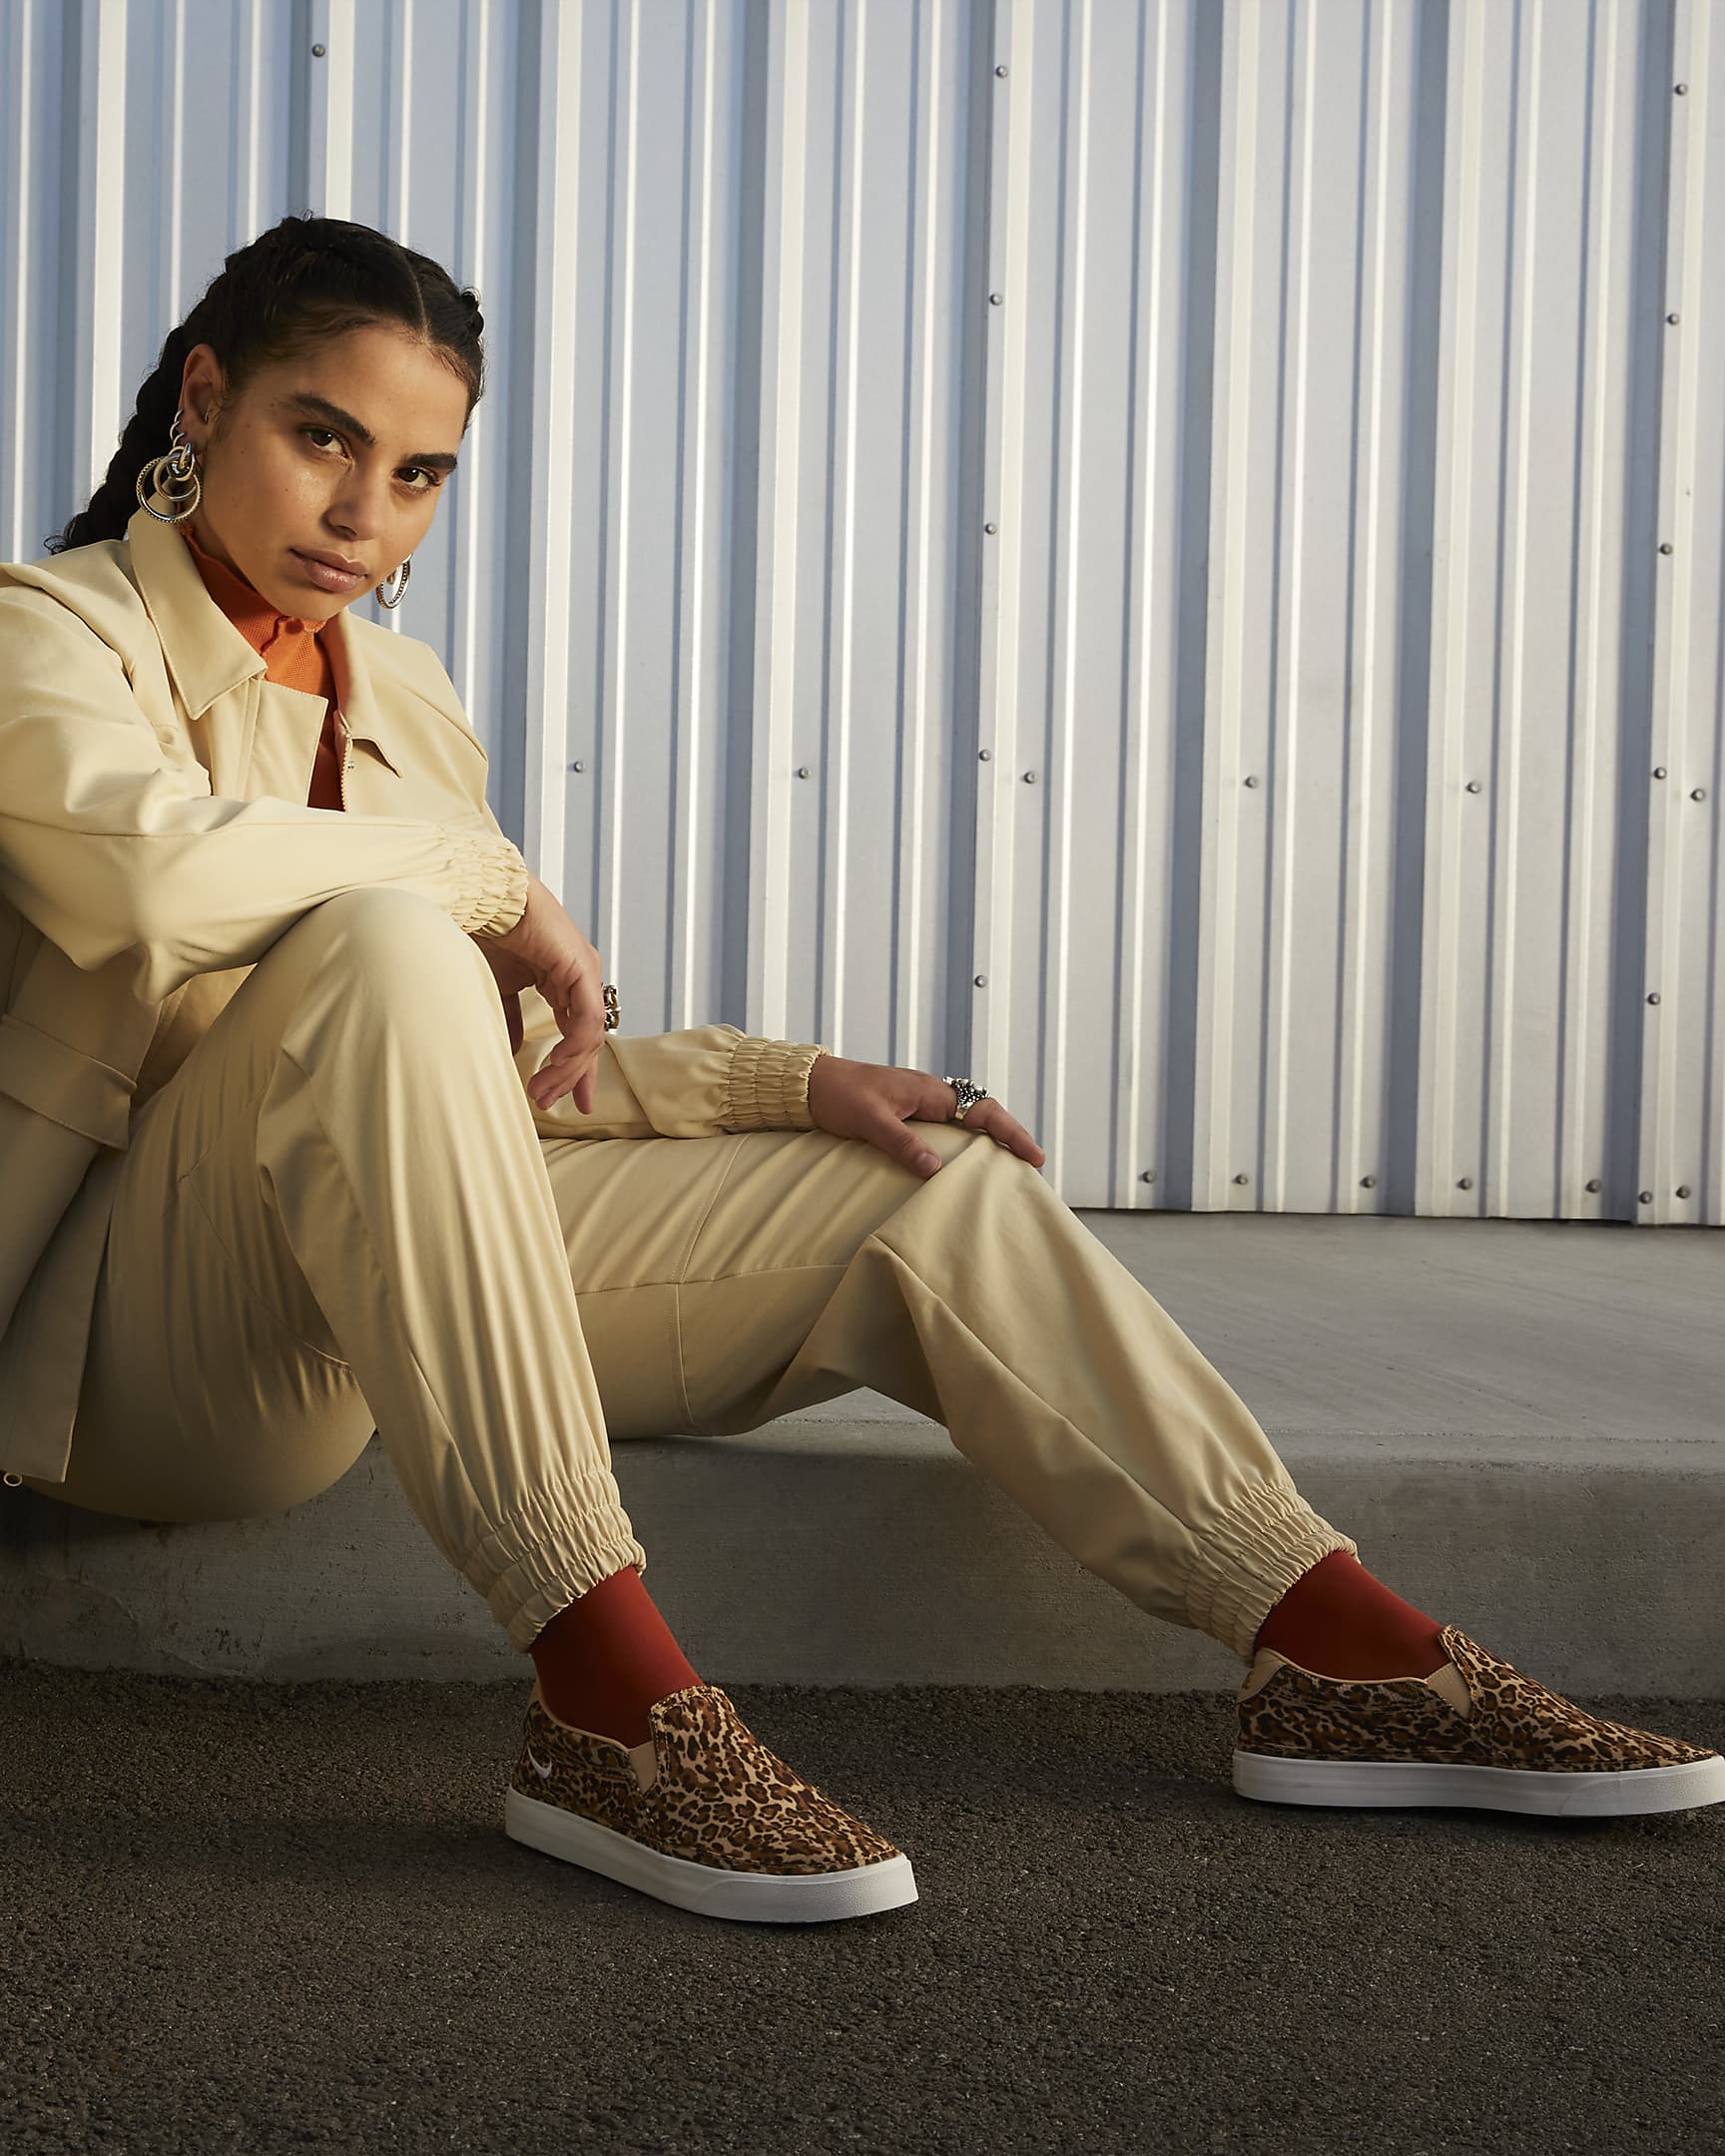 NikeCourt Legacy Leopard Women's Slip-On Shoes - Sesame/Desert Ochre/Summit White/Phantom